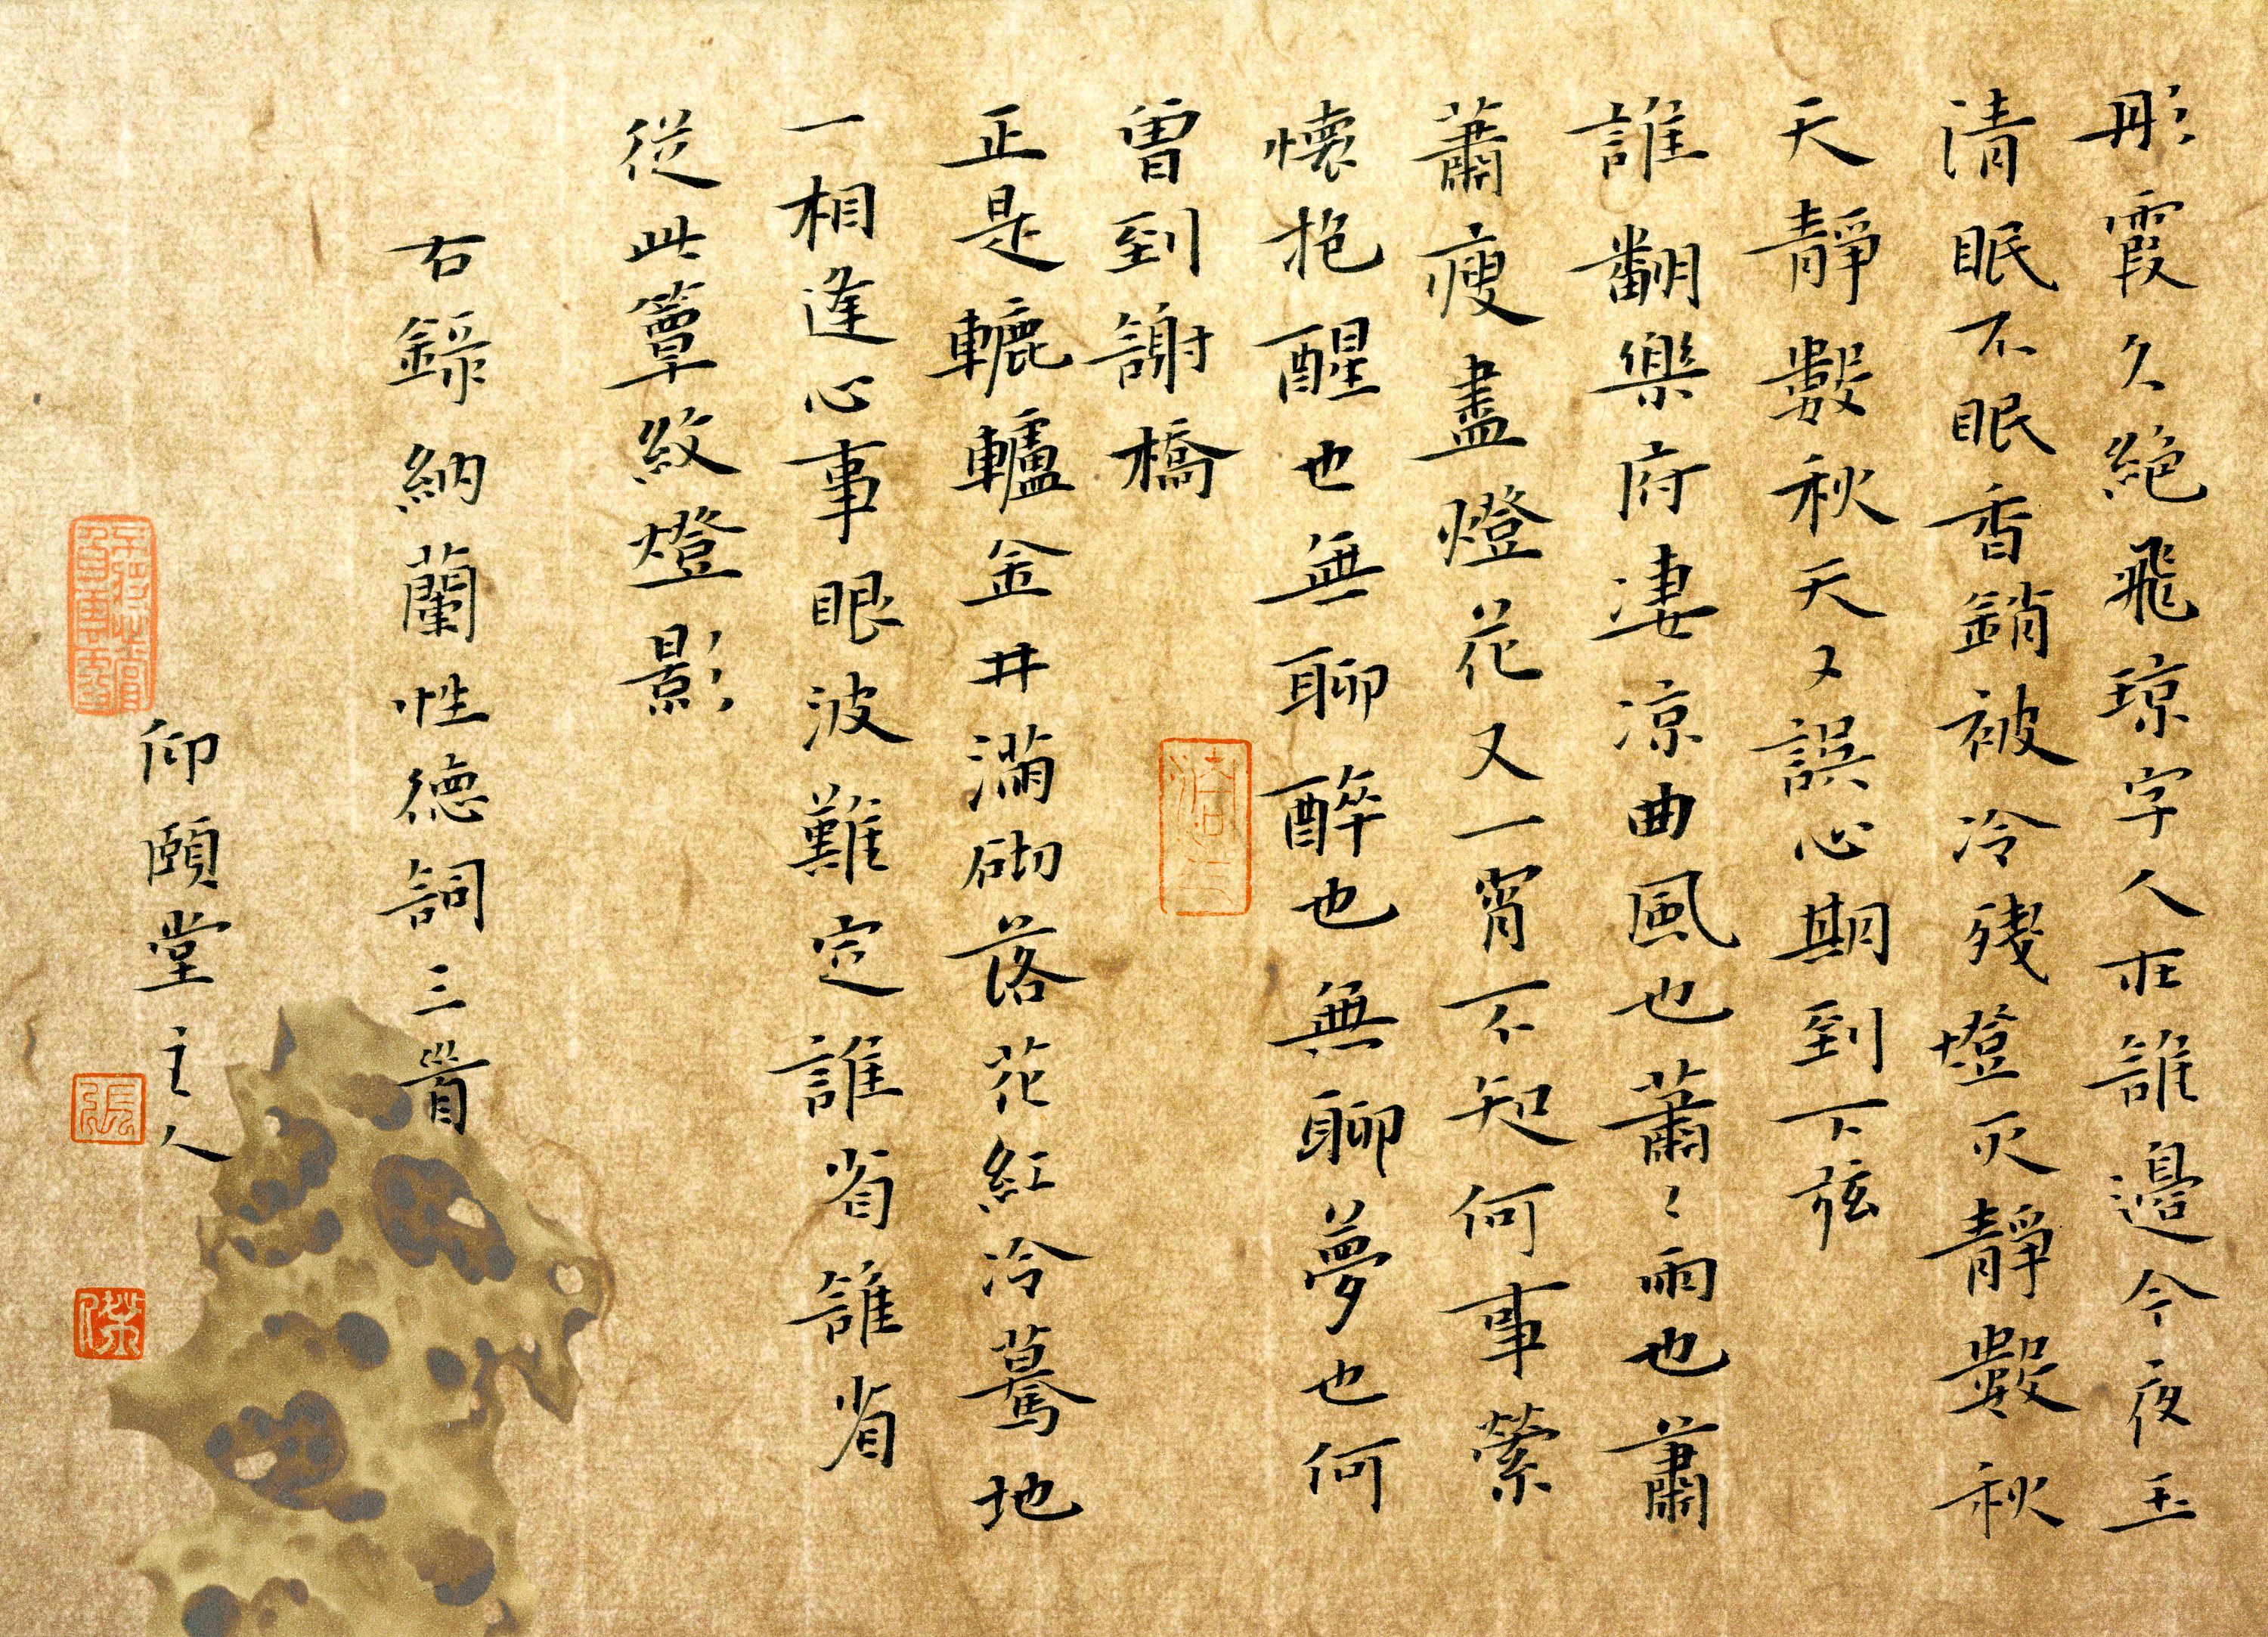 文字 古诗 文字控壁纸(其他静态壁纸) - 静态壁纸下载 - 元气壁纸